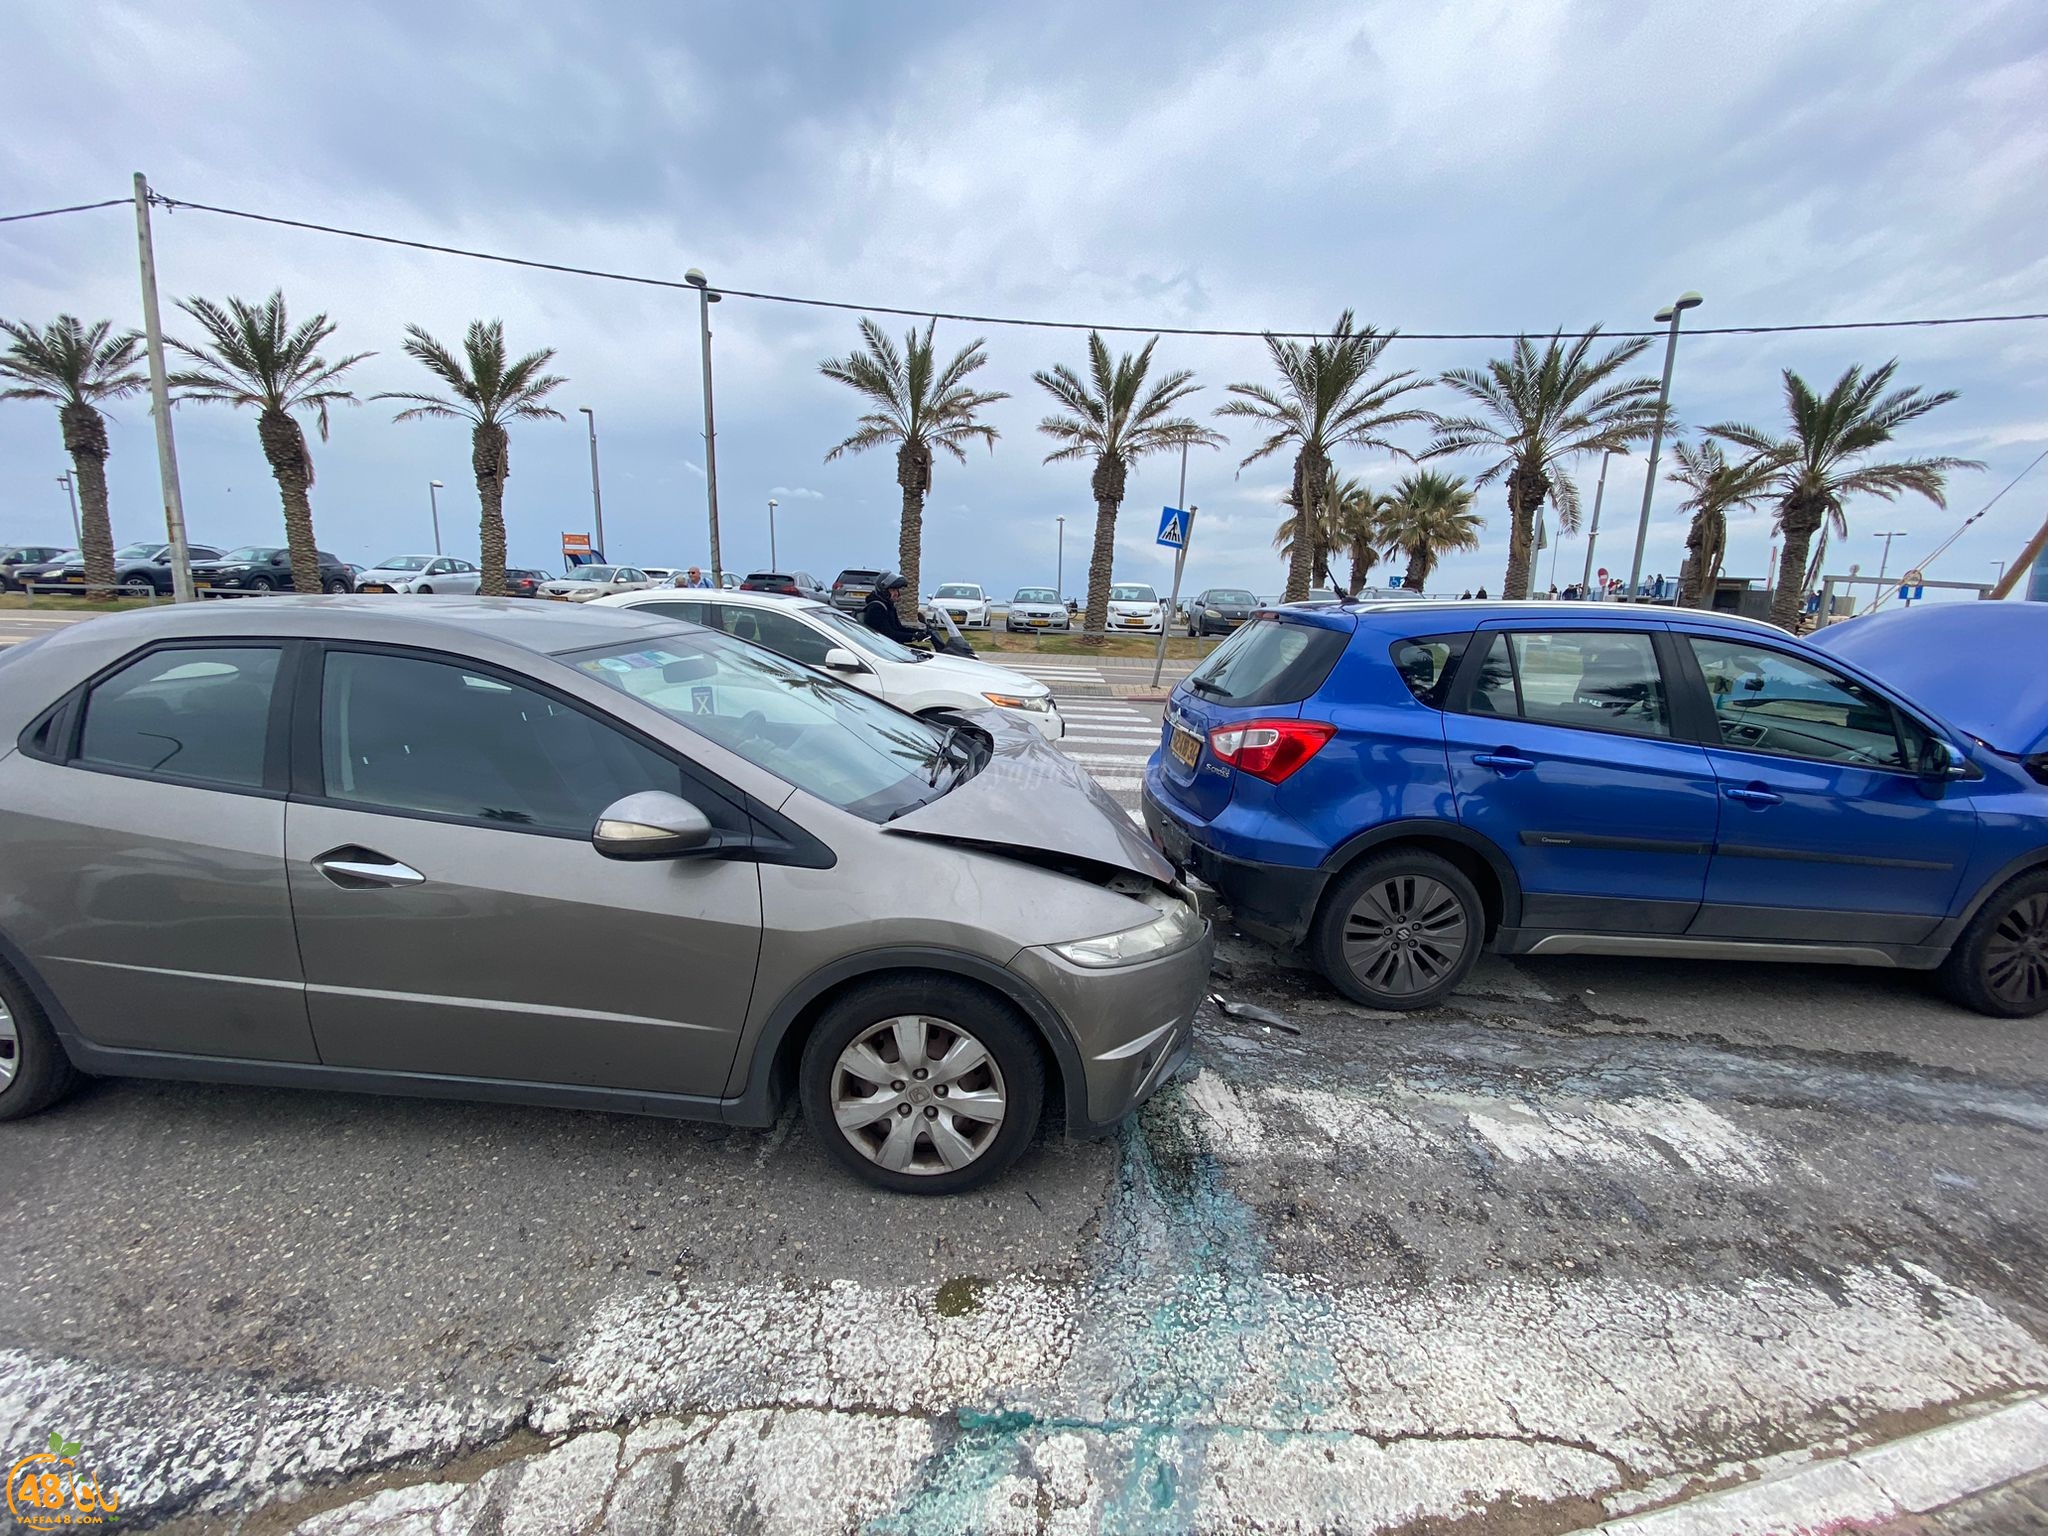  يافا: اصابة سيدة بحادث طرق بين مركبتين 